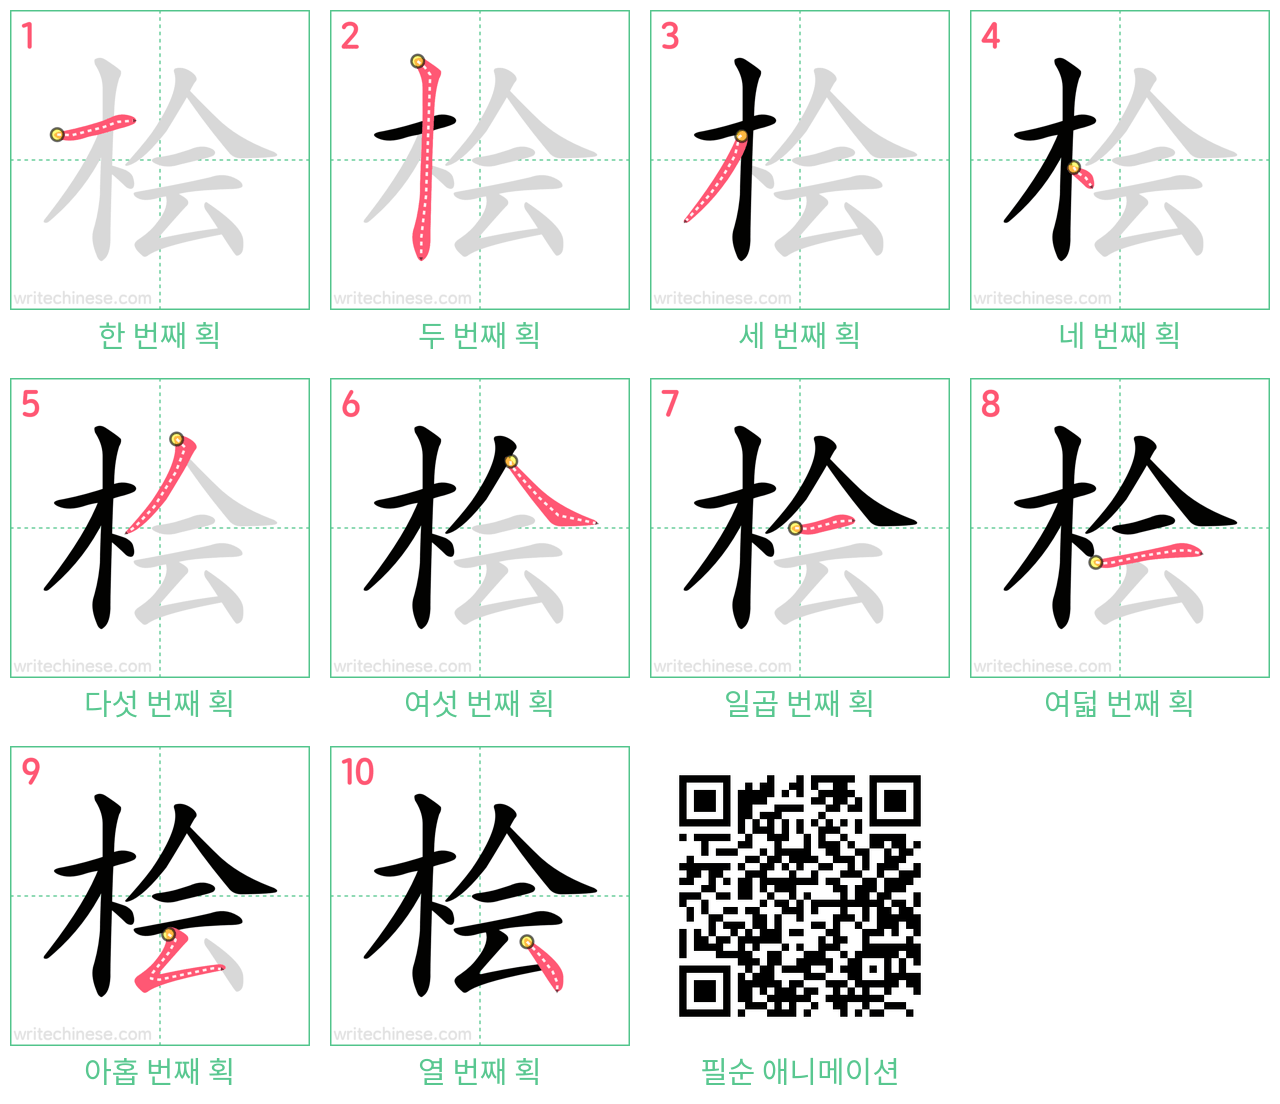 桧 step-by-step stroke order diagrams